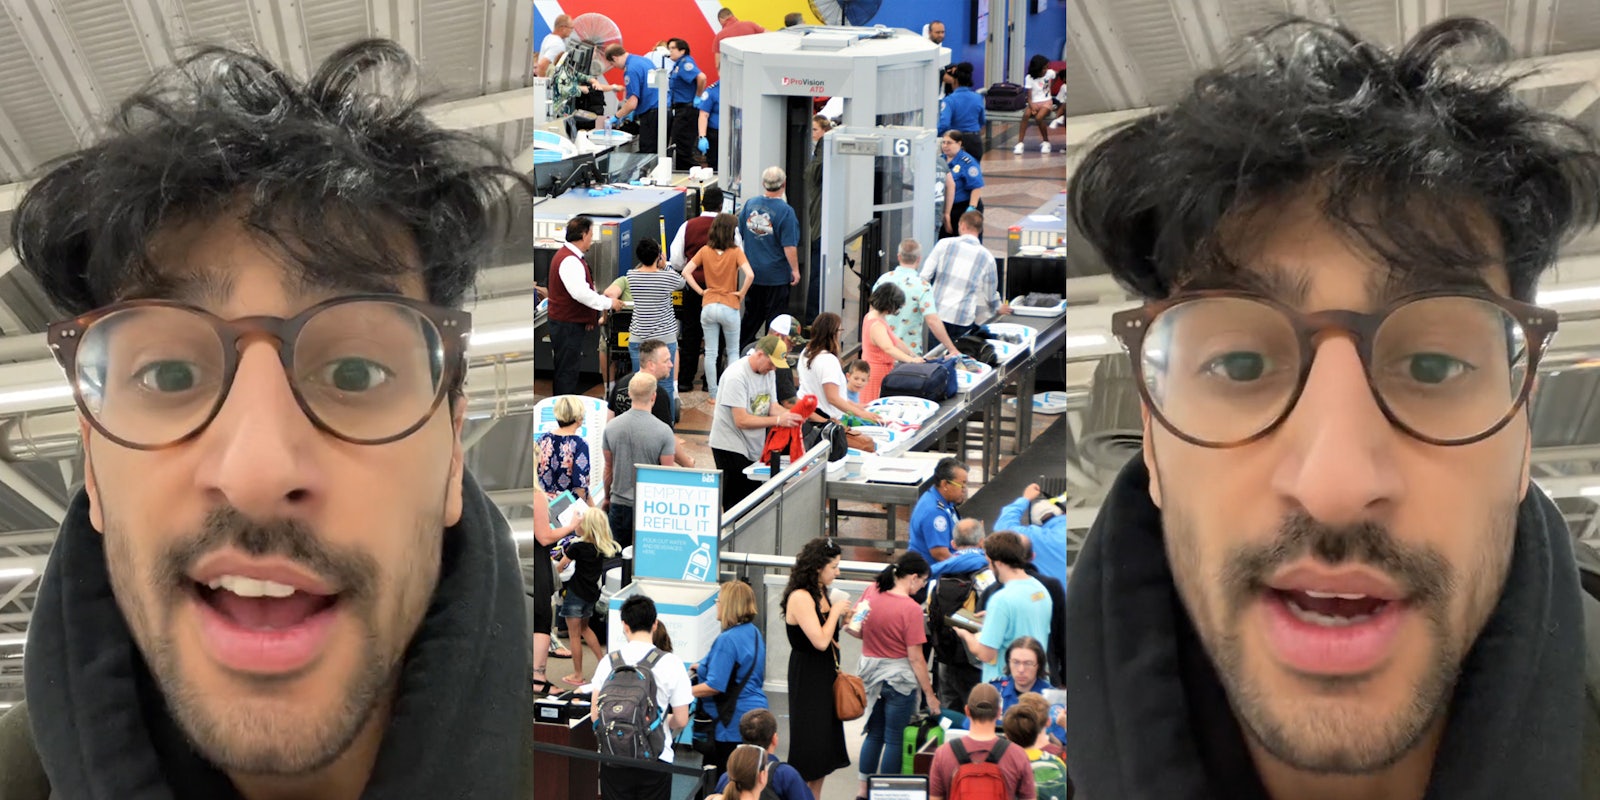 man speaking (l) TSA at airport (c) man speaking (r)